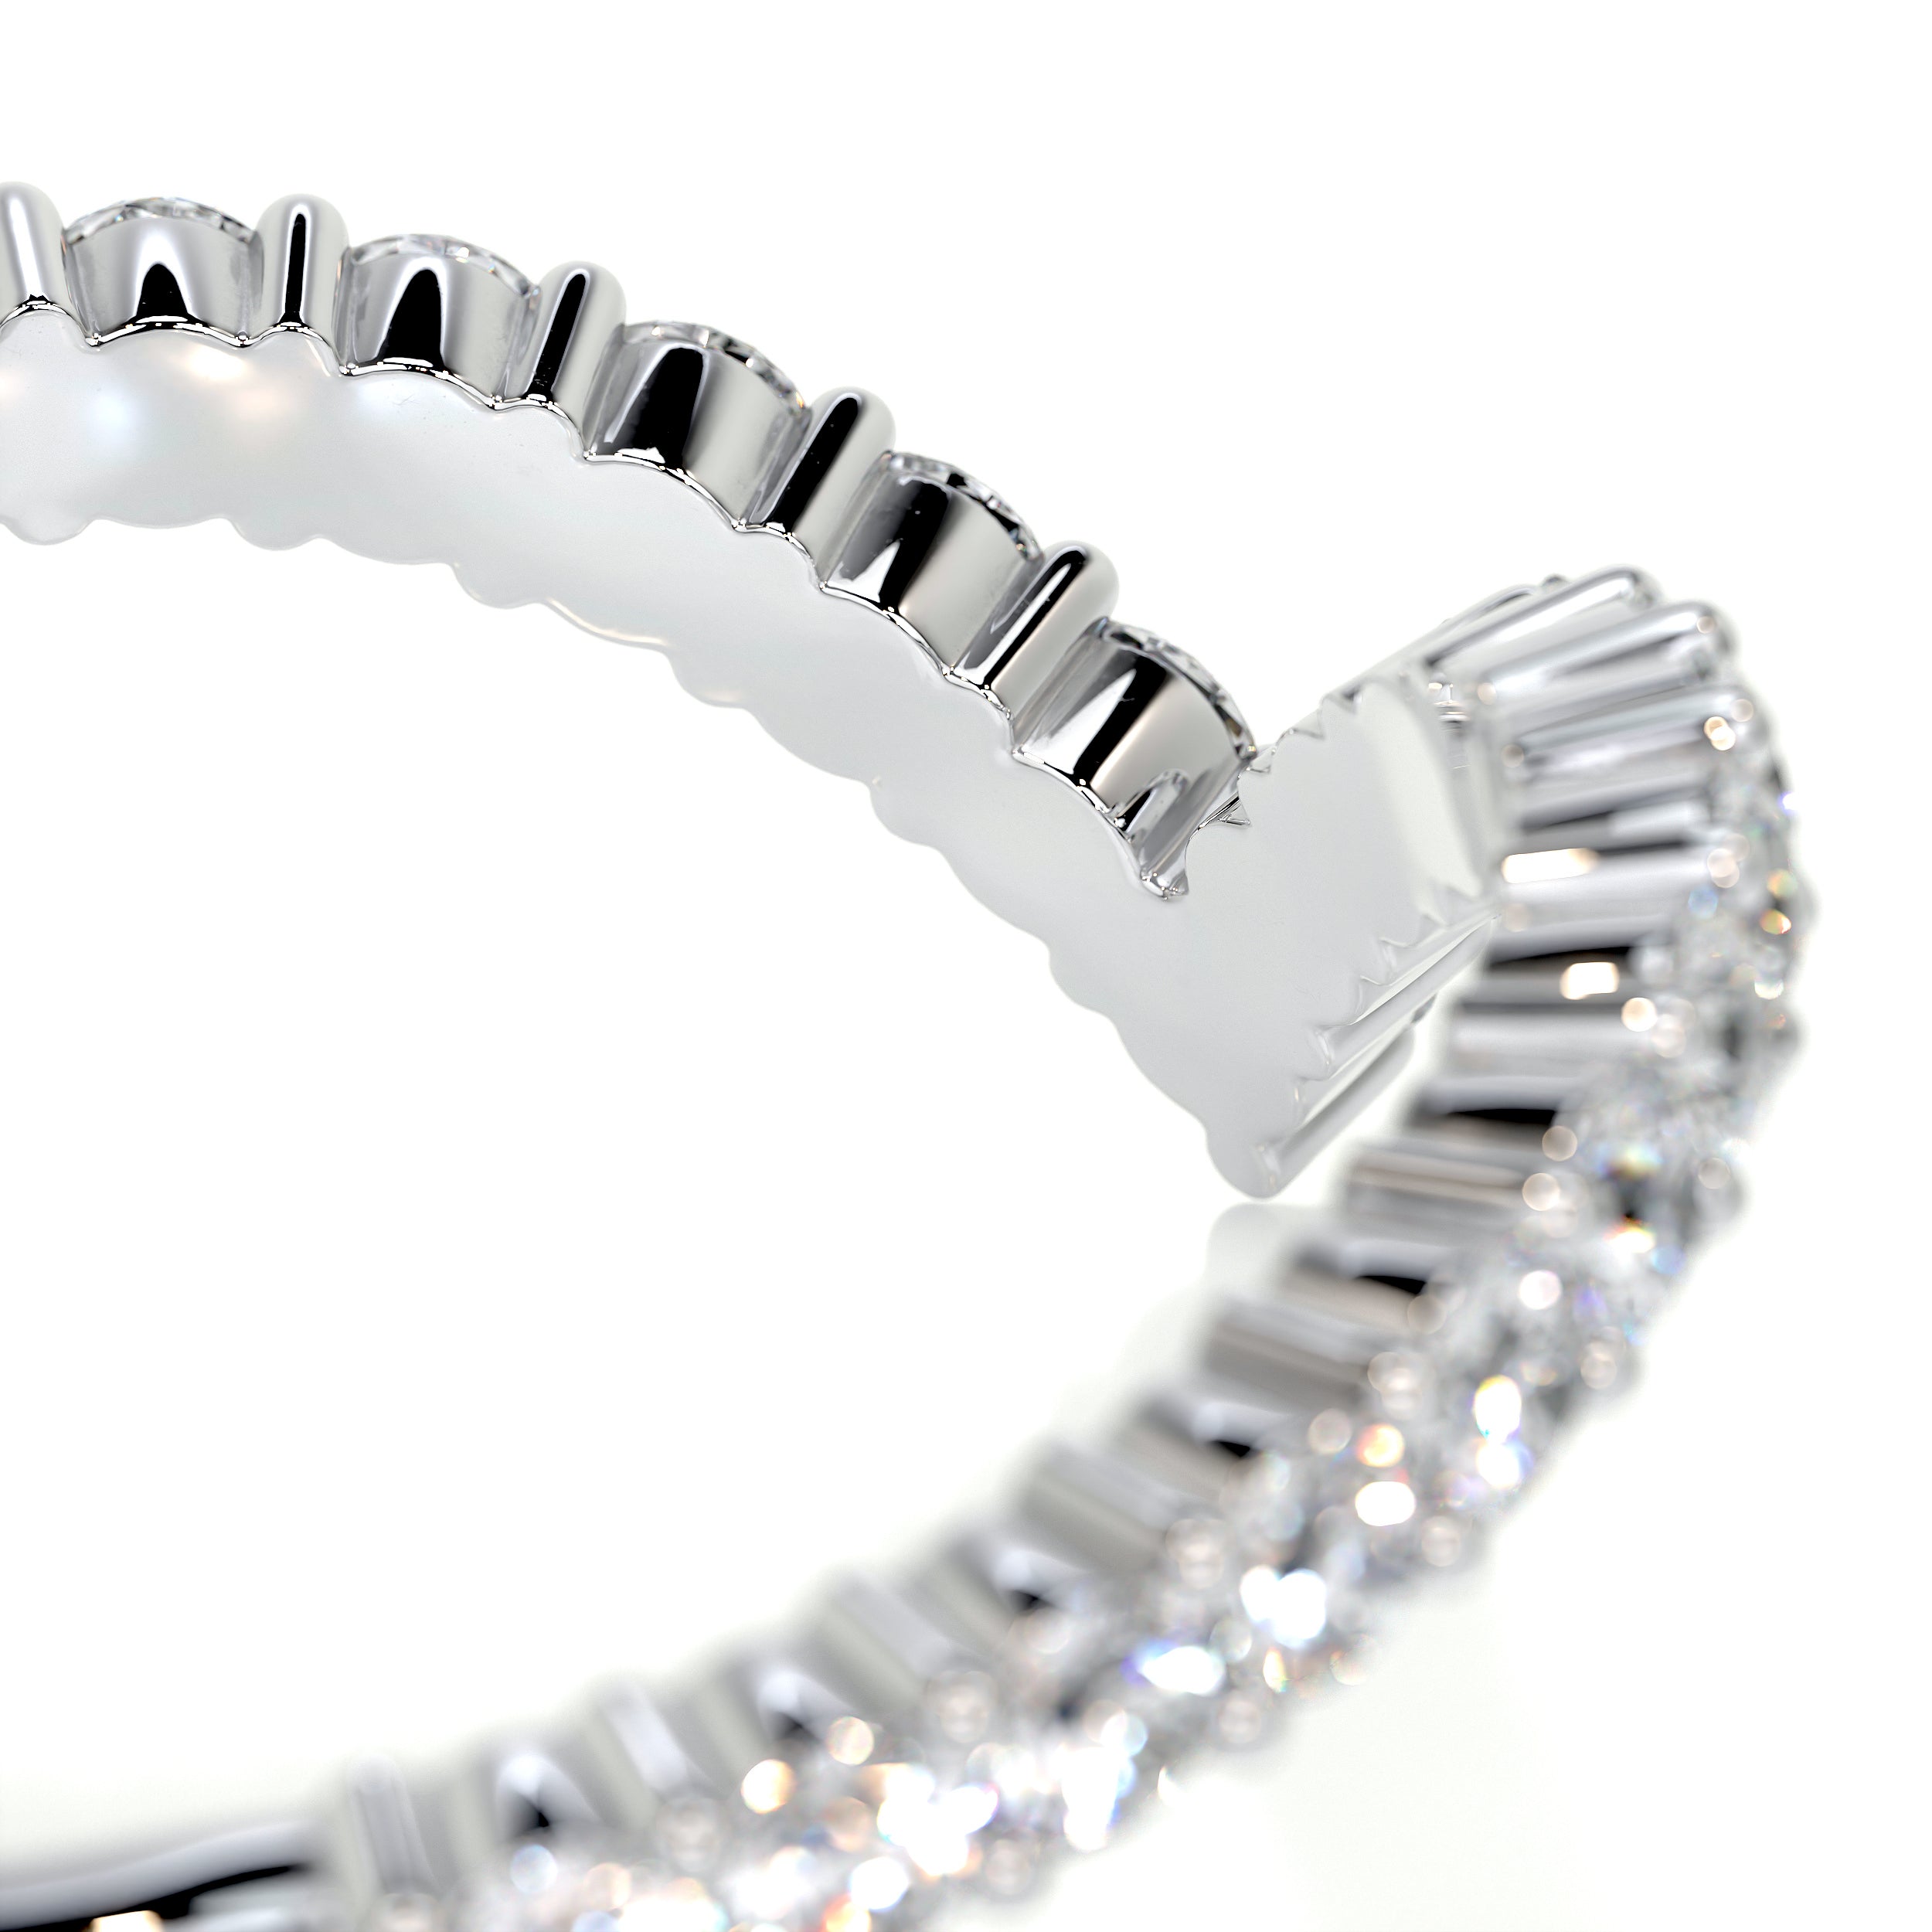 Dawn Diamond Wedding Ring   (0.50 Carat) -18K White Gold